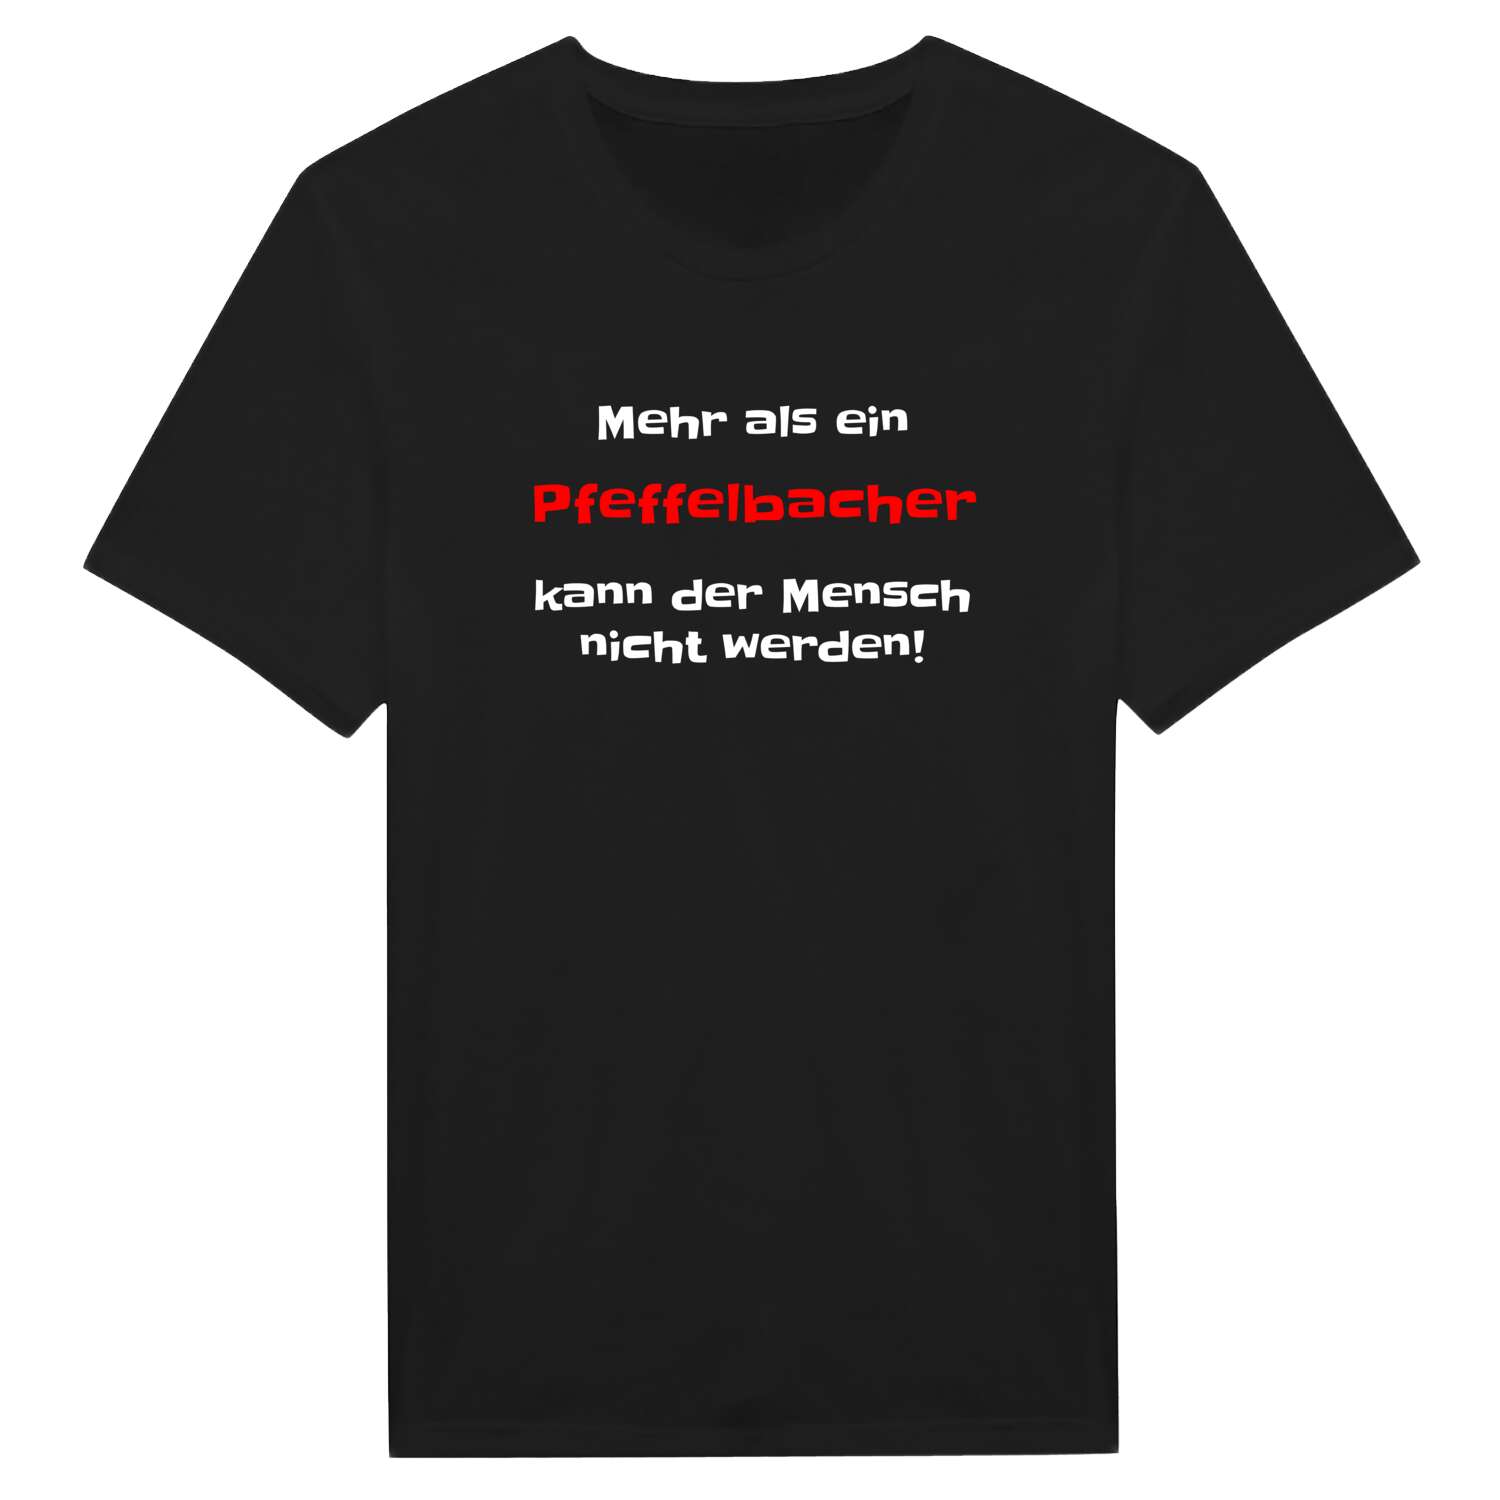 Pfeffelbach T-Shirt »Mehr als ein«